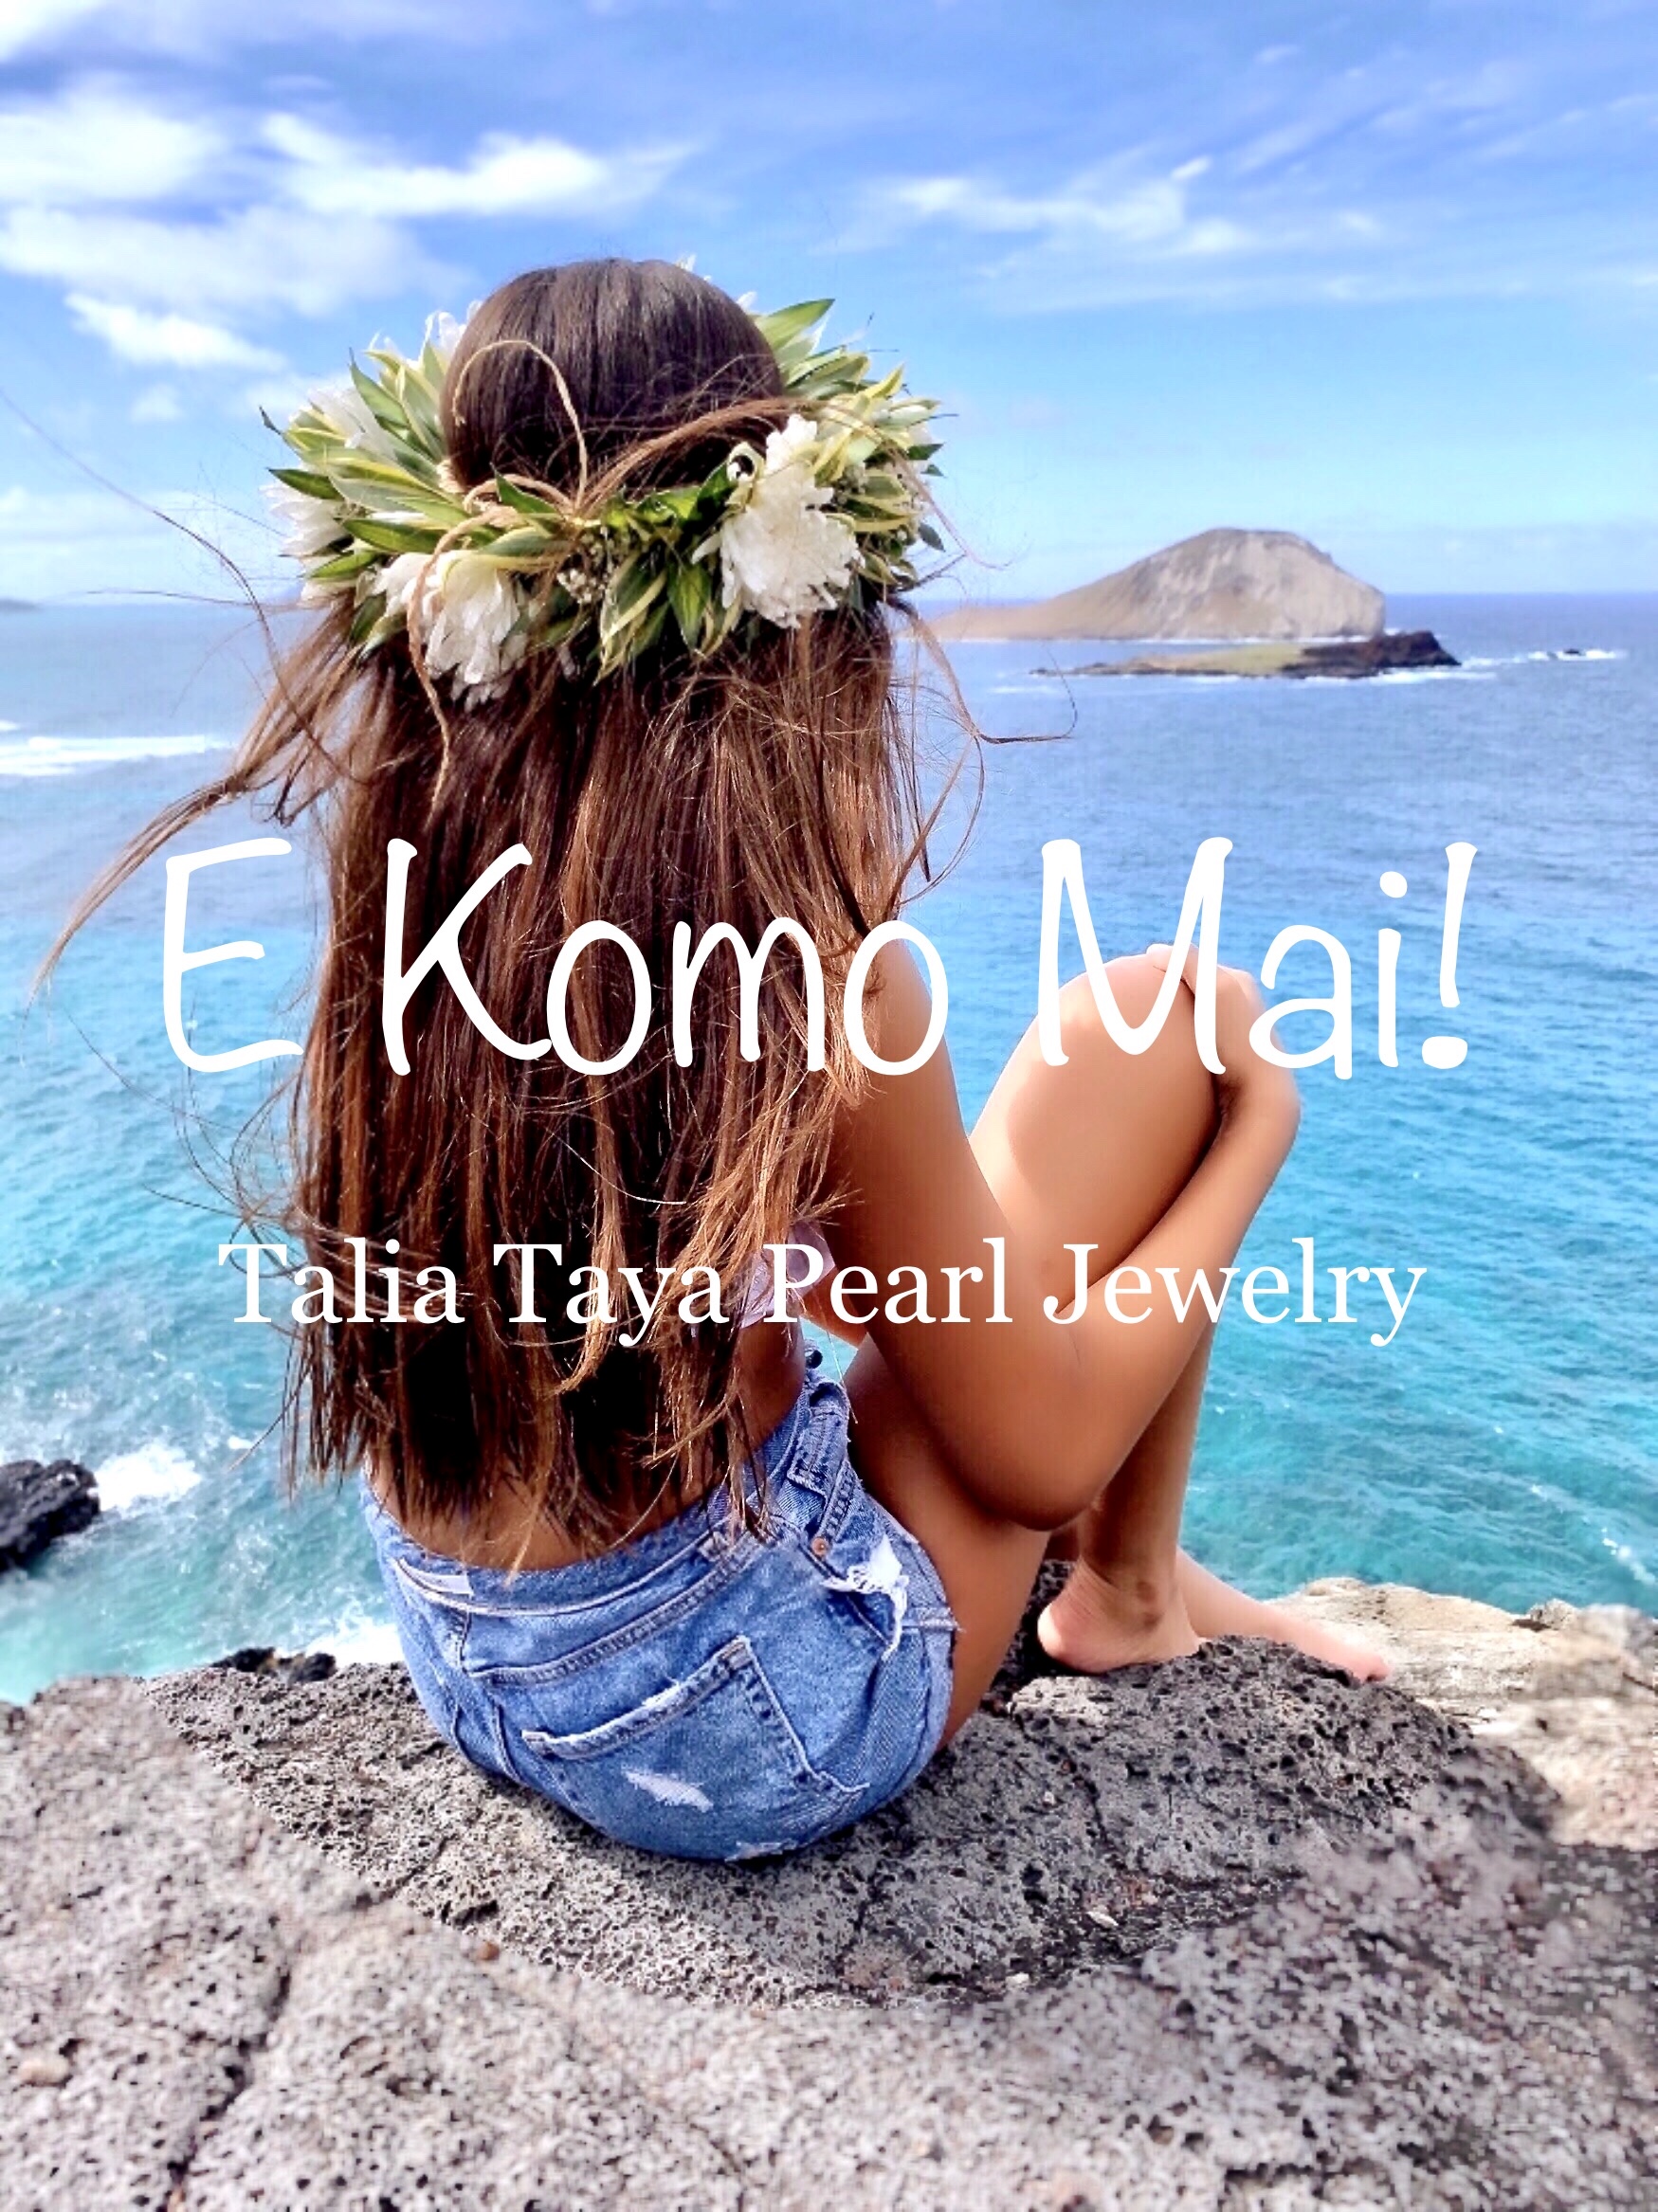 Talia Taya Pearl Jewelry